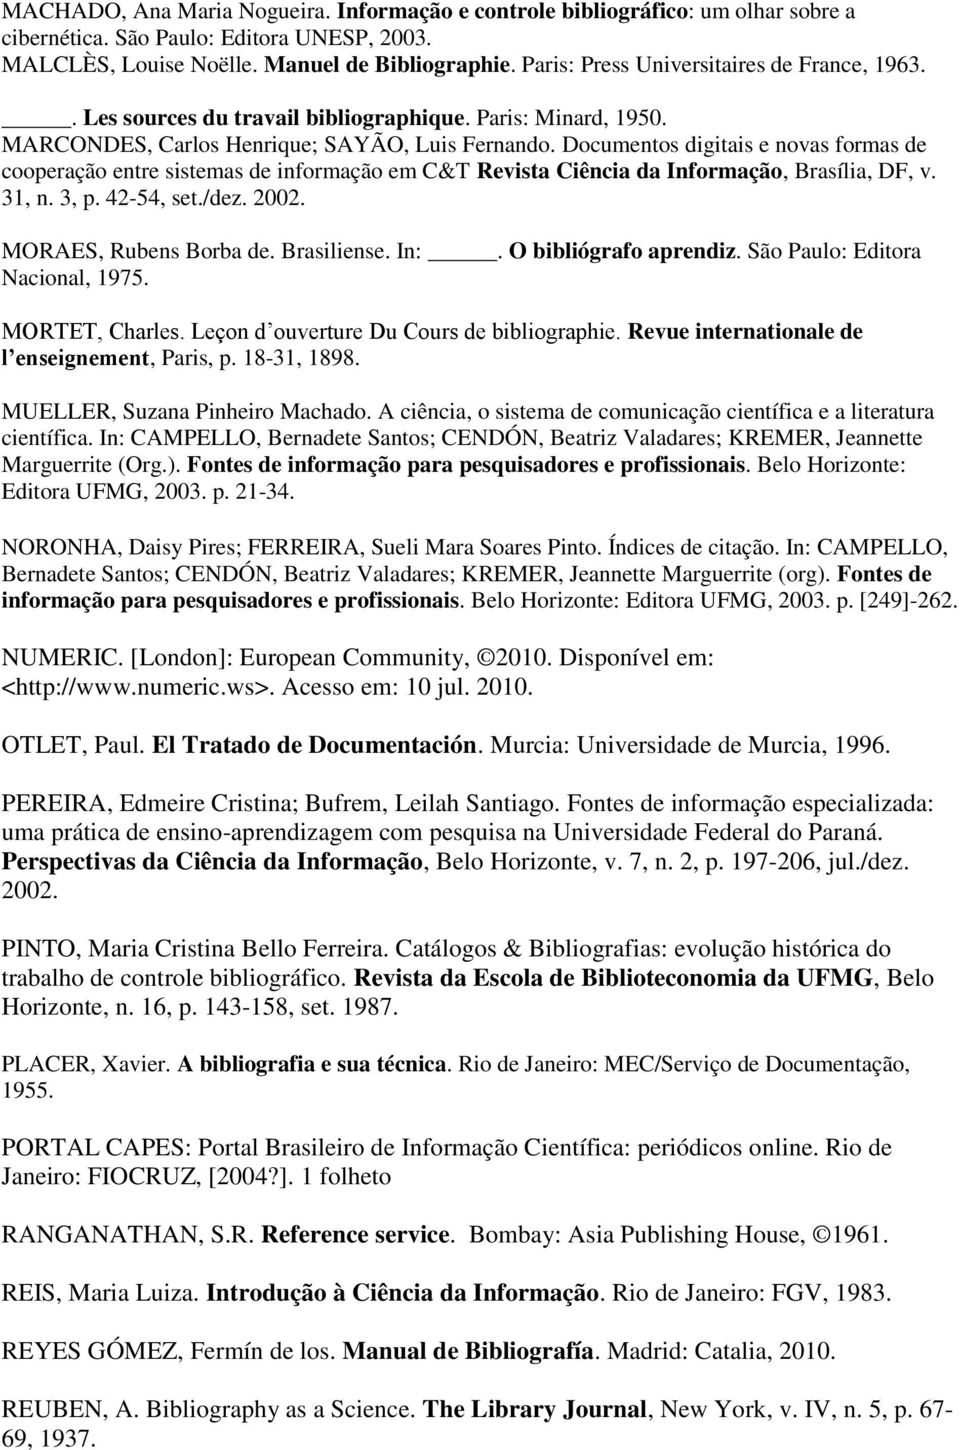 Documentos digitais e novas formas de cooperação entre sistemas de informação em C&T Revista Ciência da Informação, Brasília, DF, v. 31, n. 3, p. 42-54, set./dez. 2002. MORAES, Rubens Borba de.